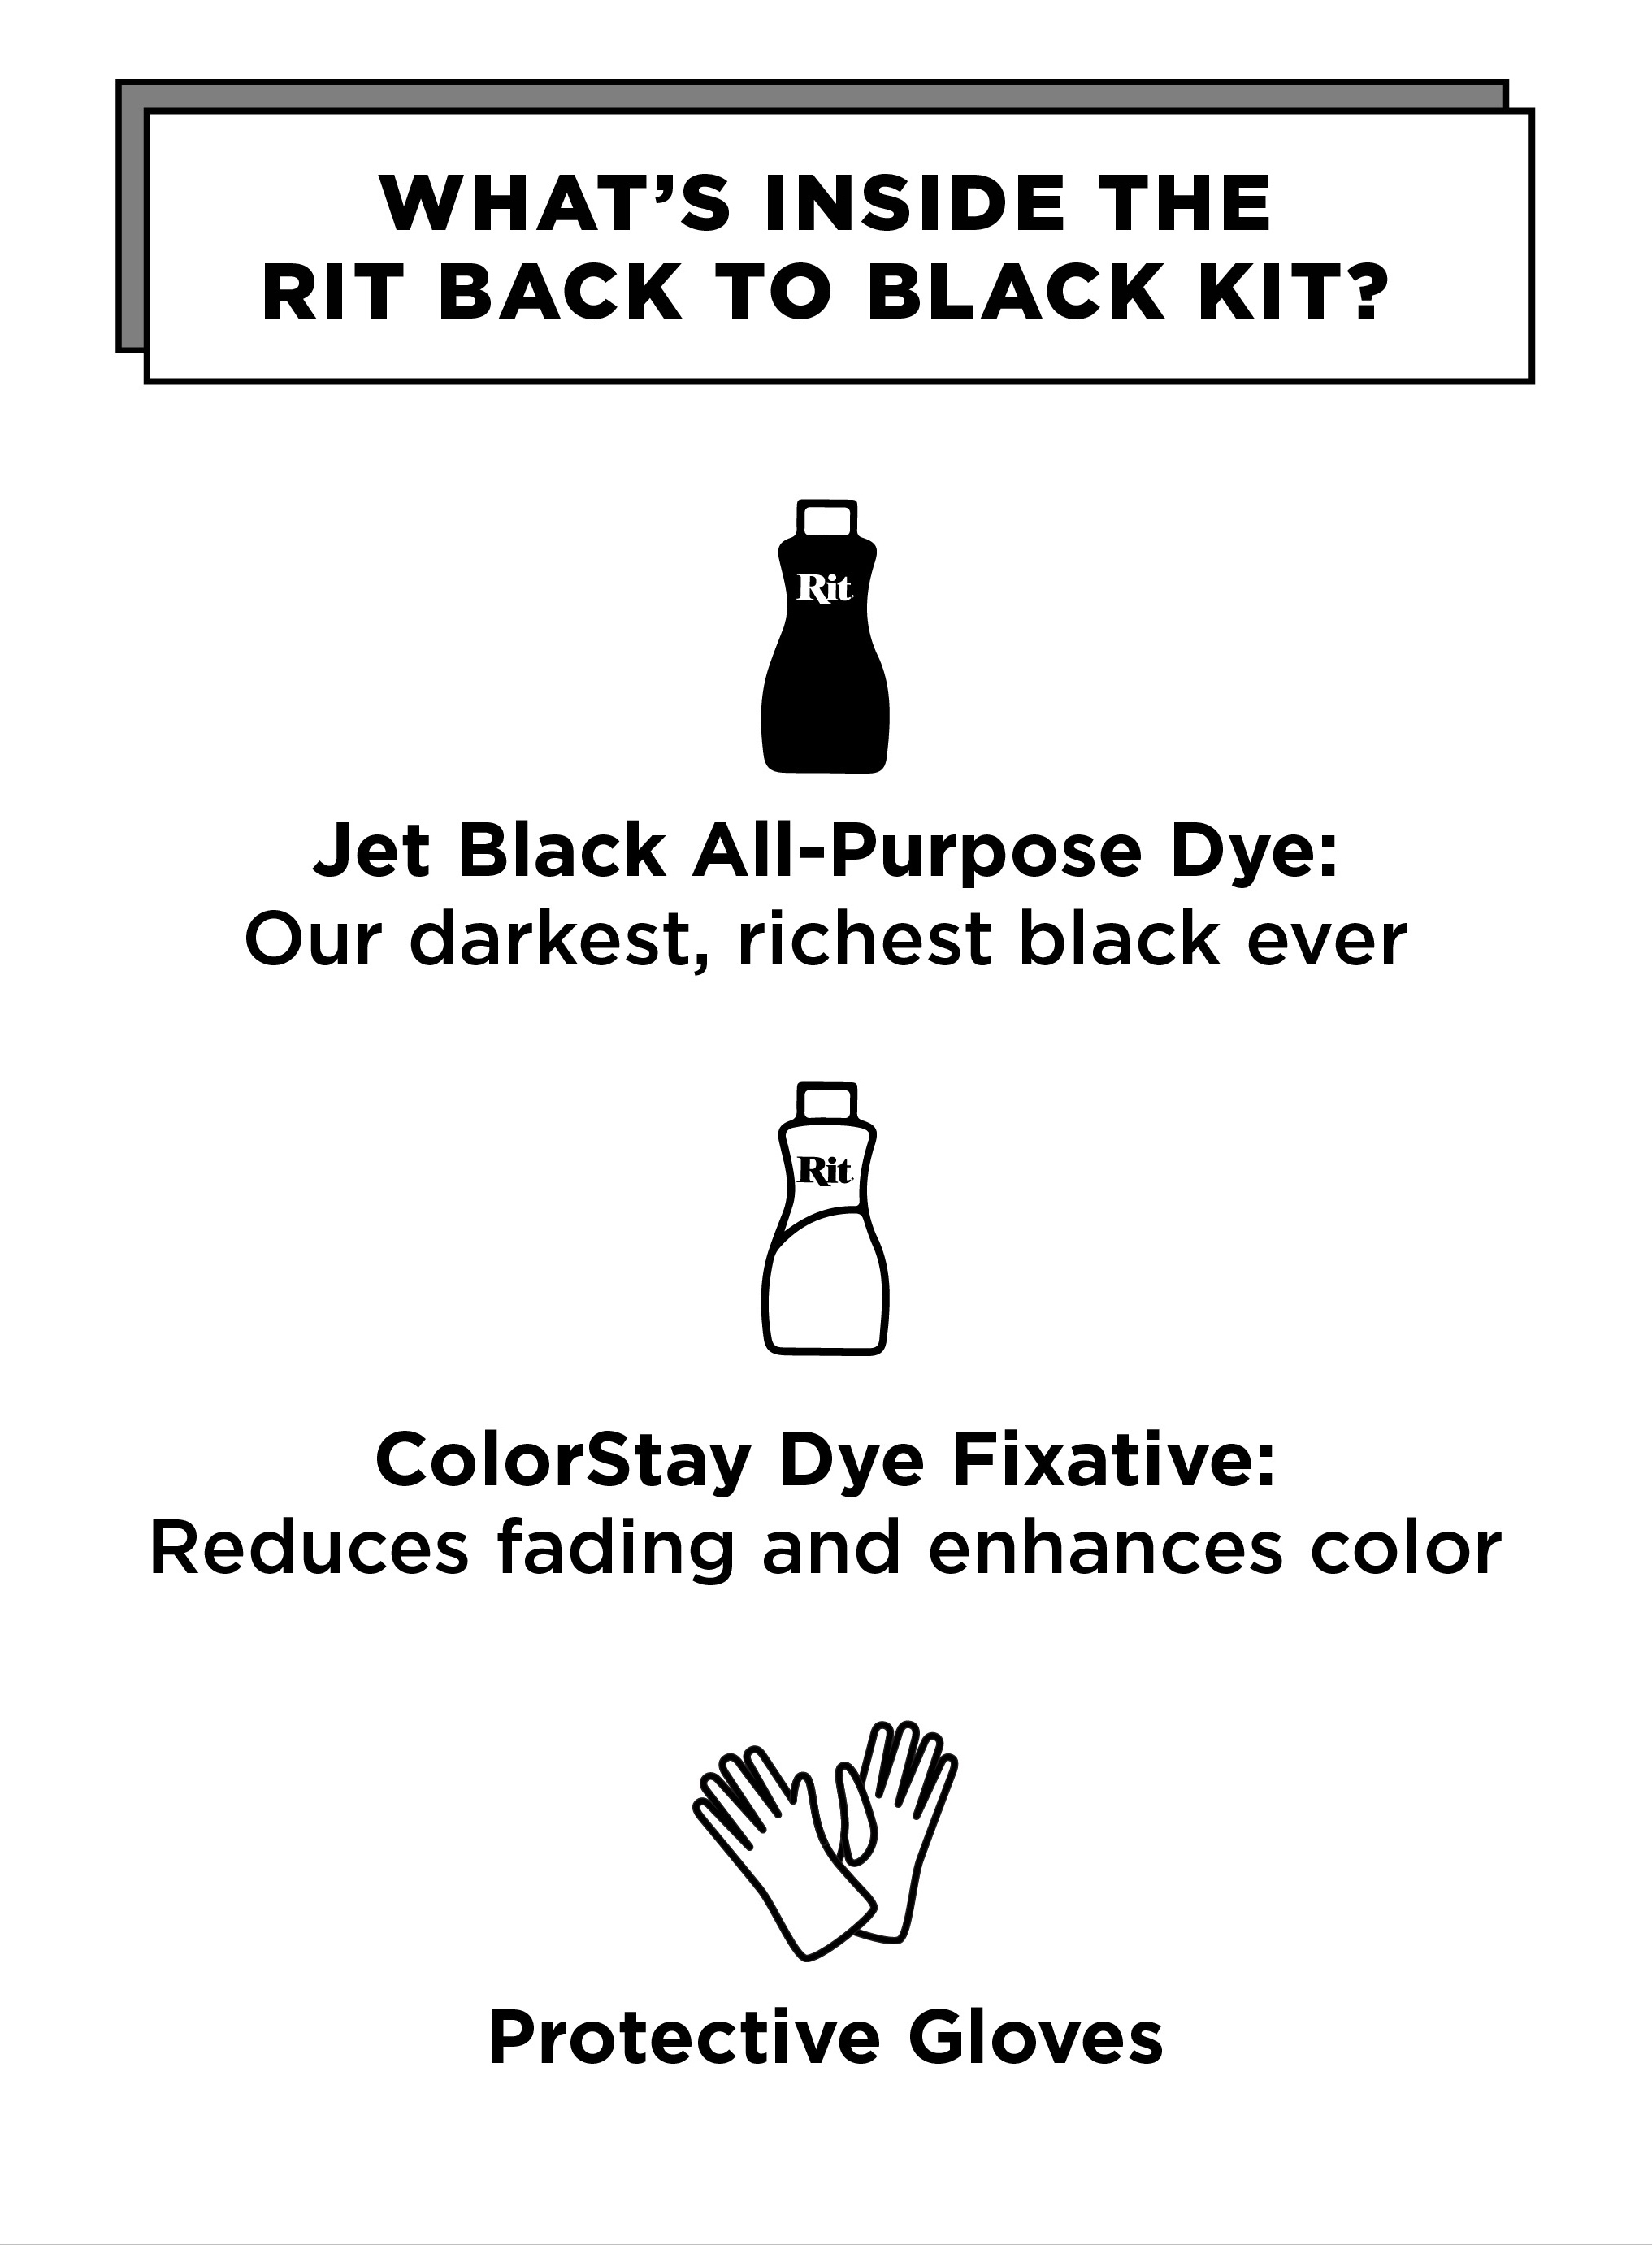 Back to Black Dye Kit: Rit Dye Online Store